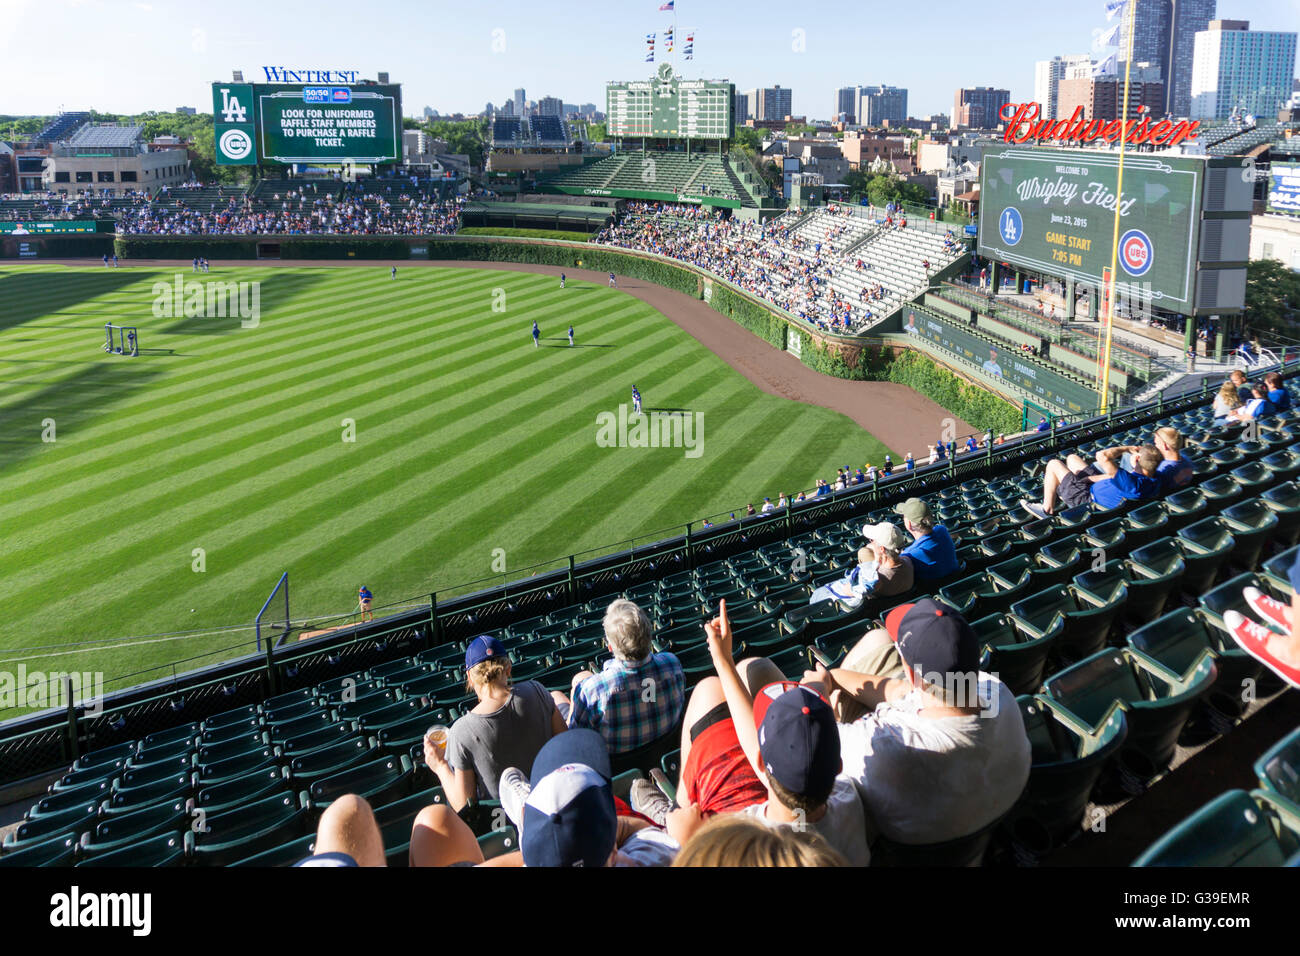 Tierra de béisbol Wrigley Field en Chicago, el hogar de los Cubs de Chicago. Foto de stock